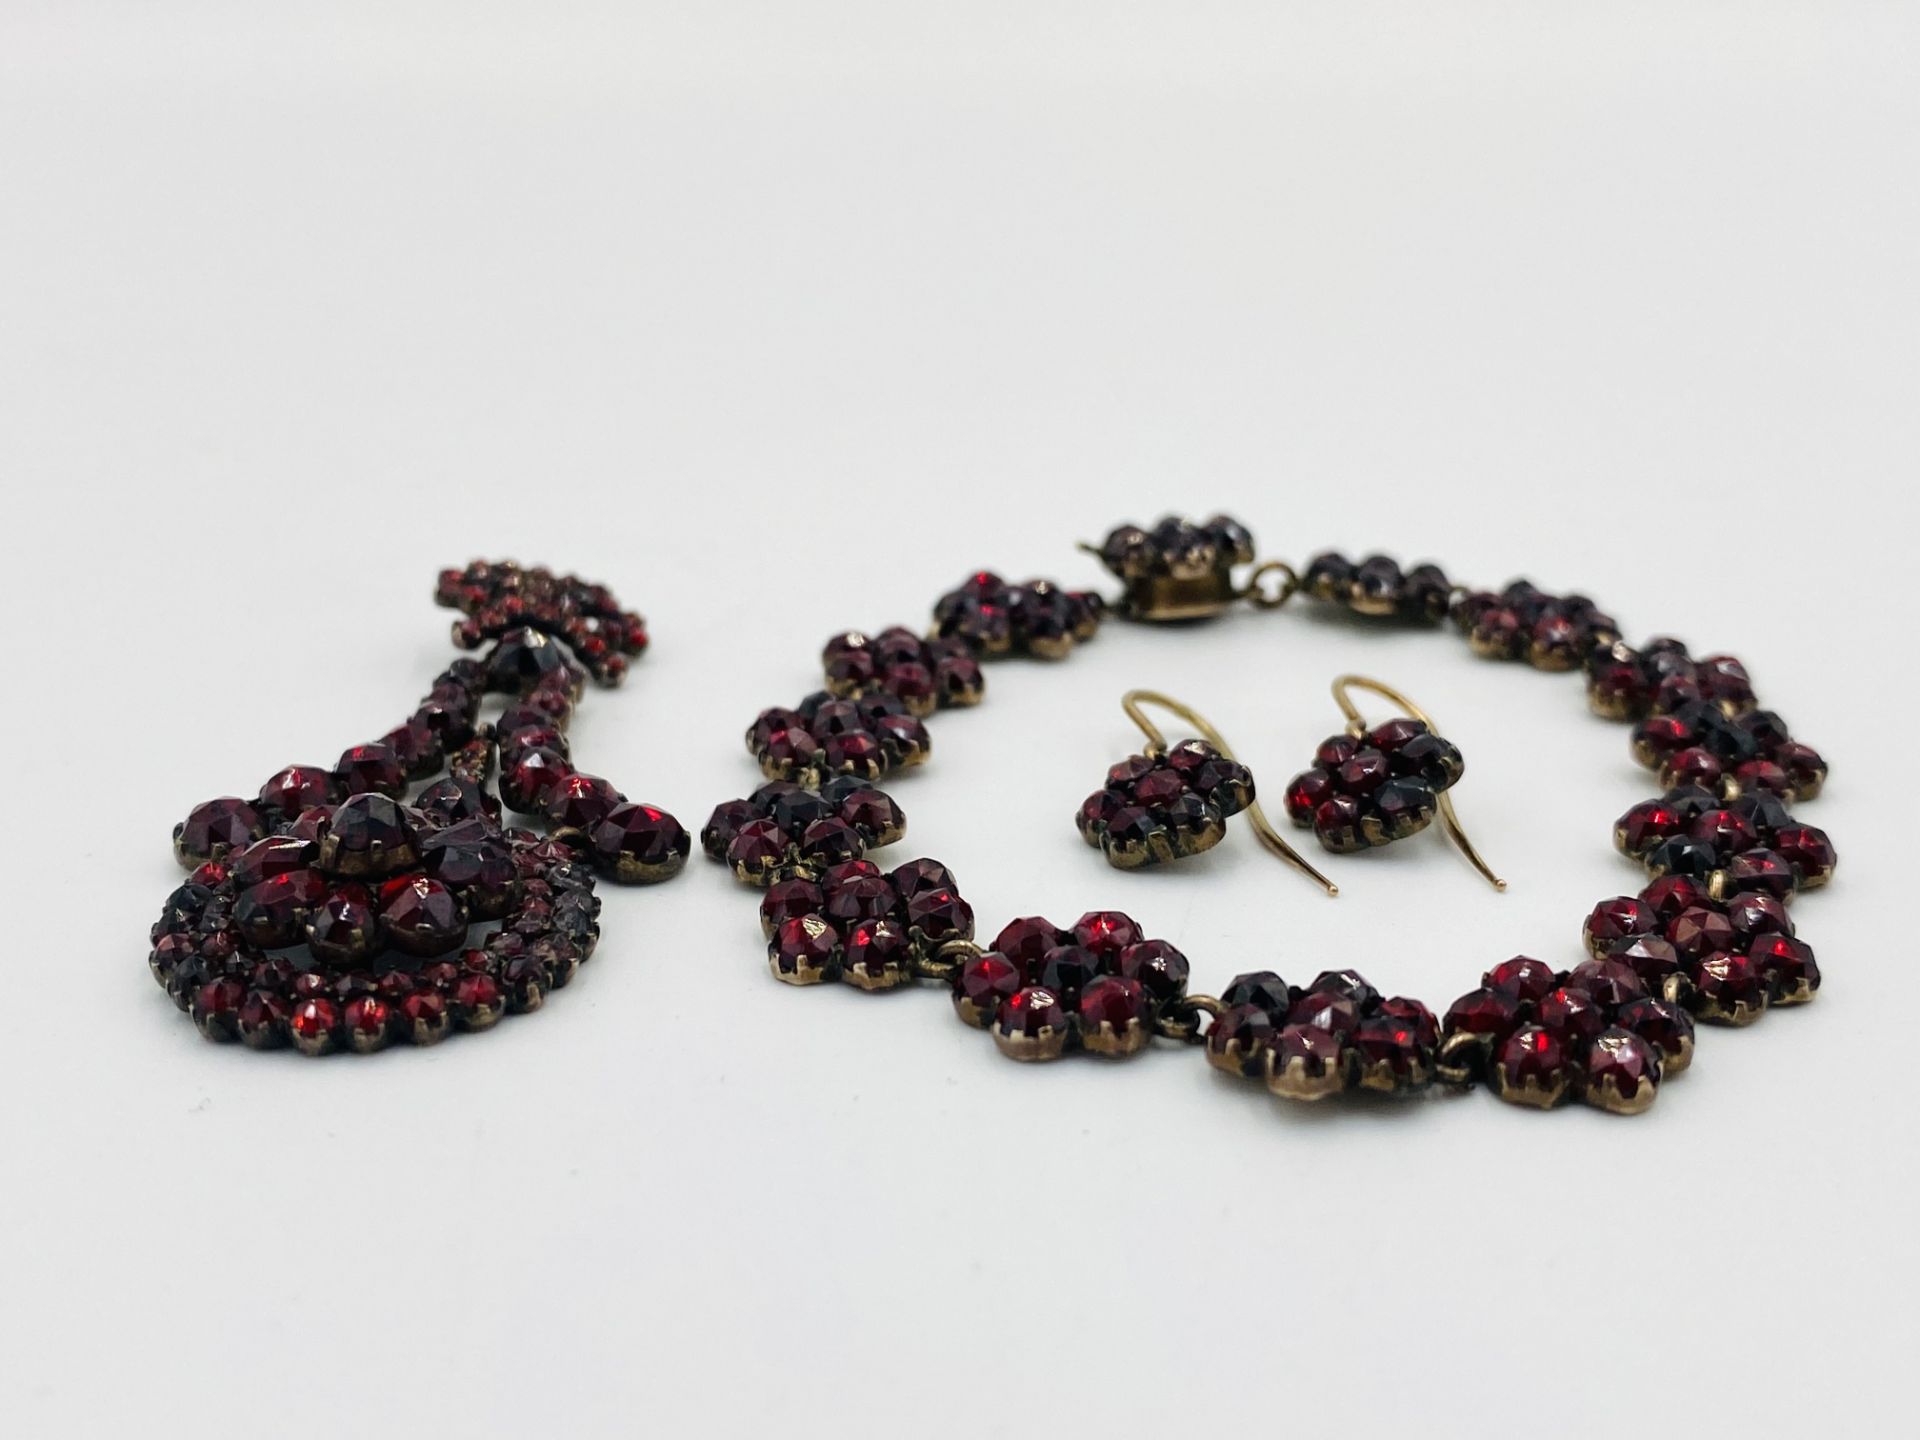 Garnet pendant, bracelet and earring set. - Image 3 of 3